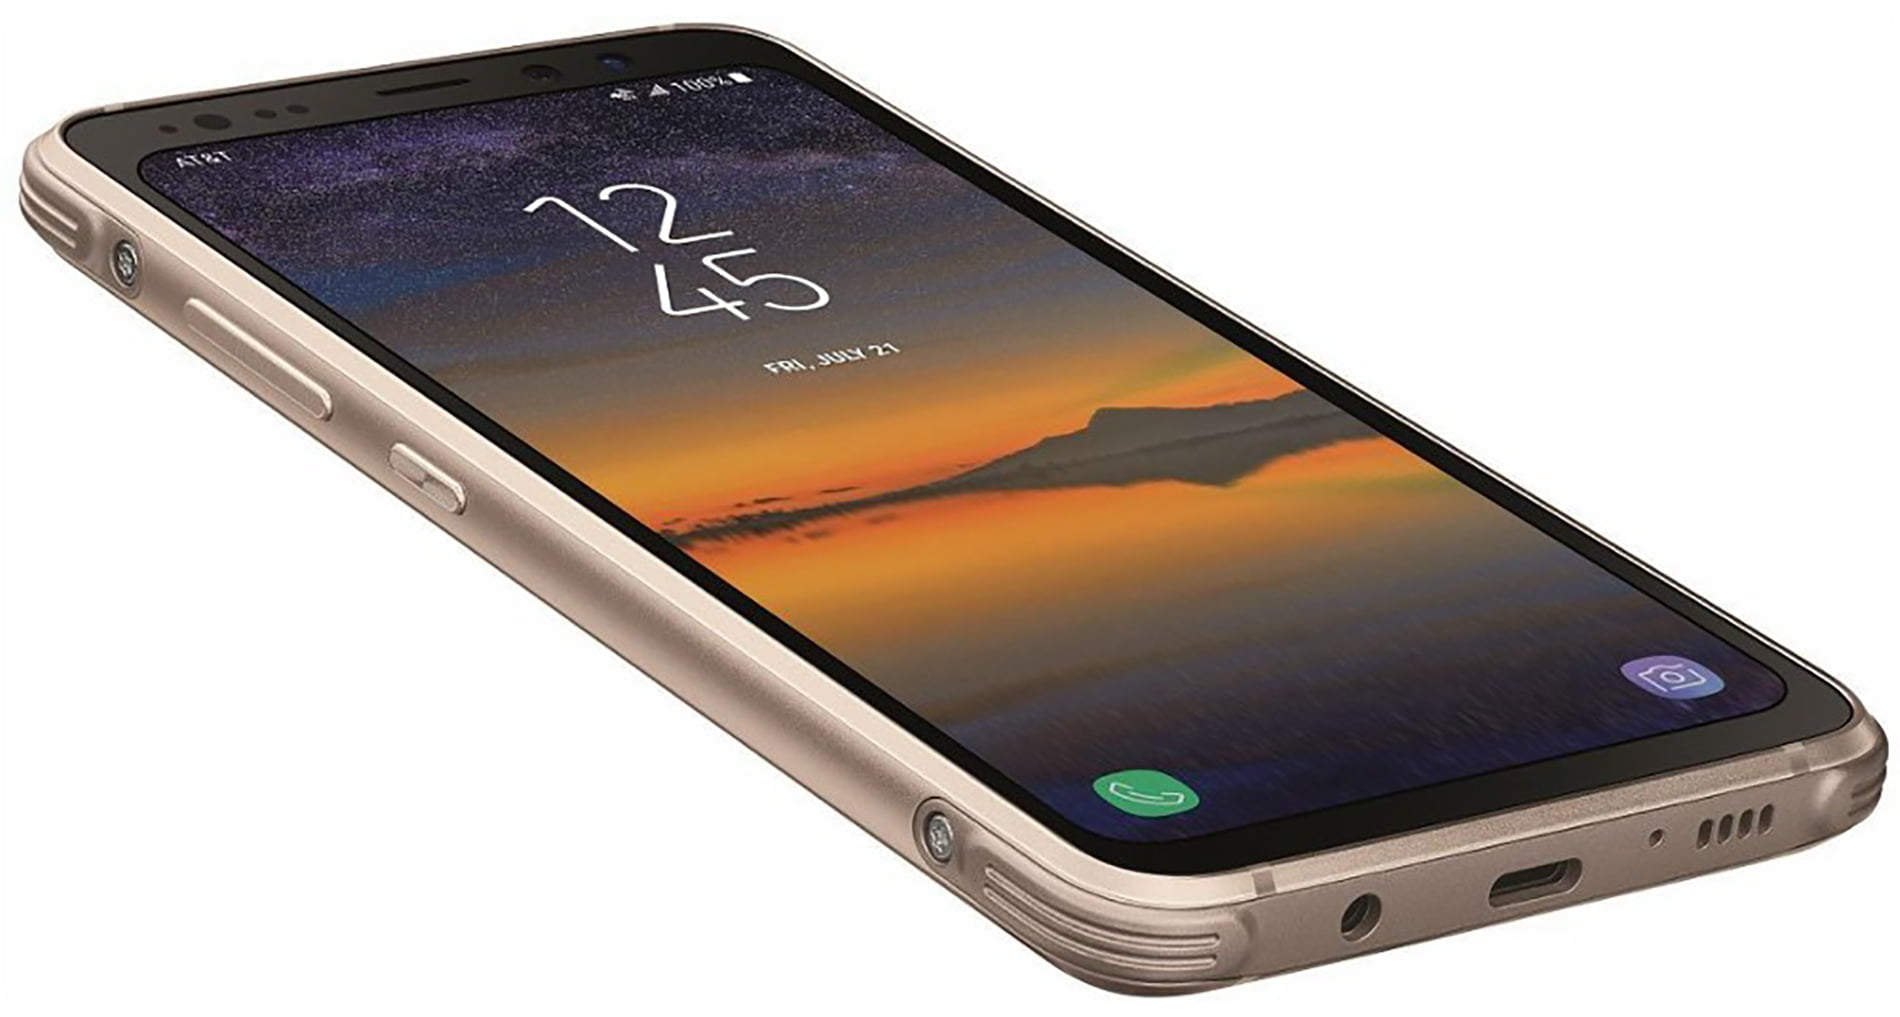 Galaxy S8 Noir 64Go - Samsung - Reconditionné - M&T Technologie